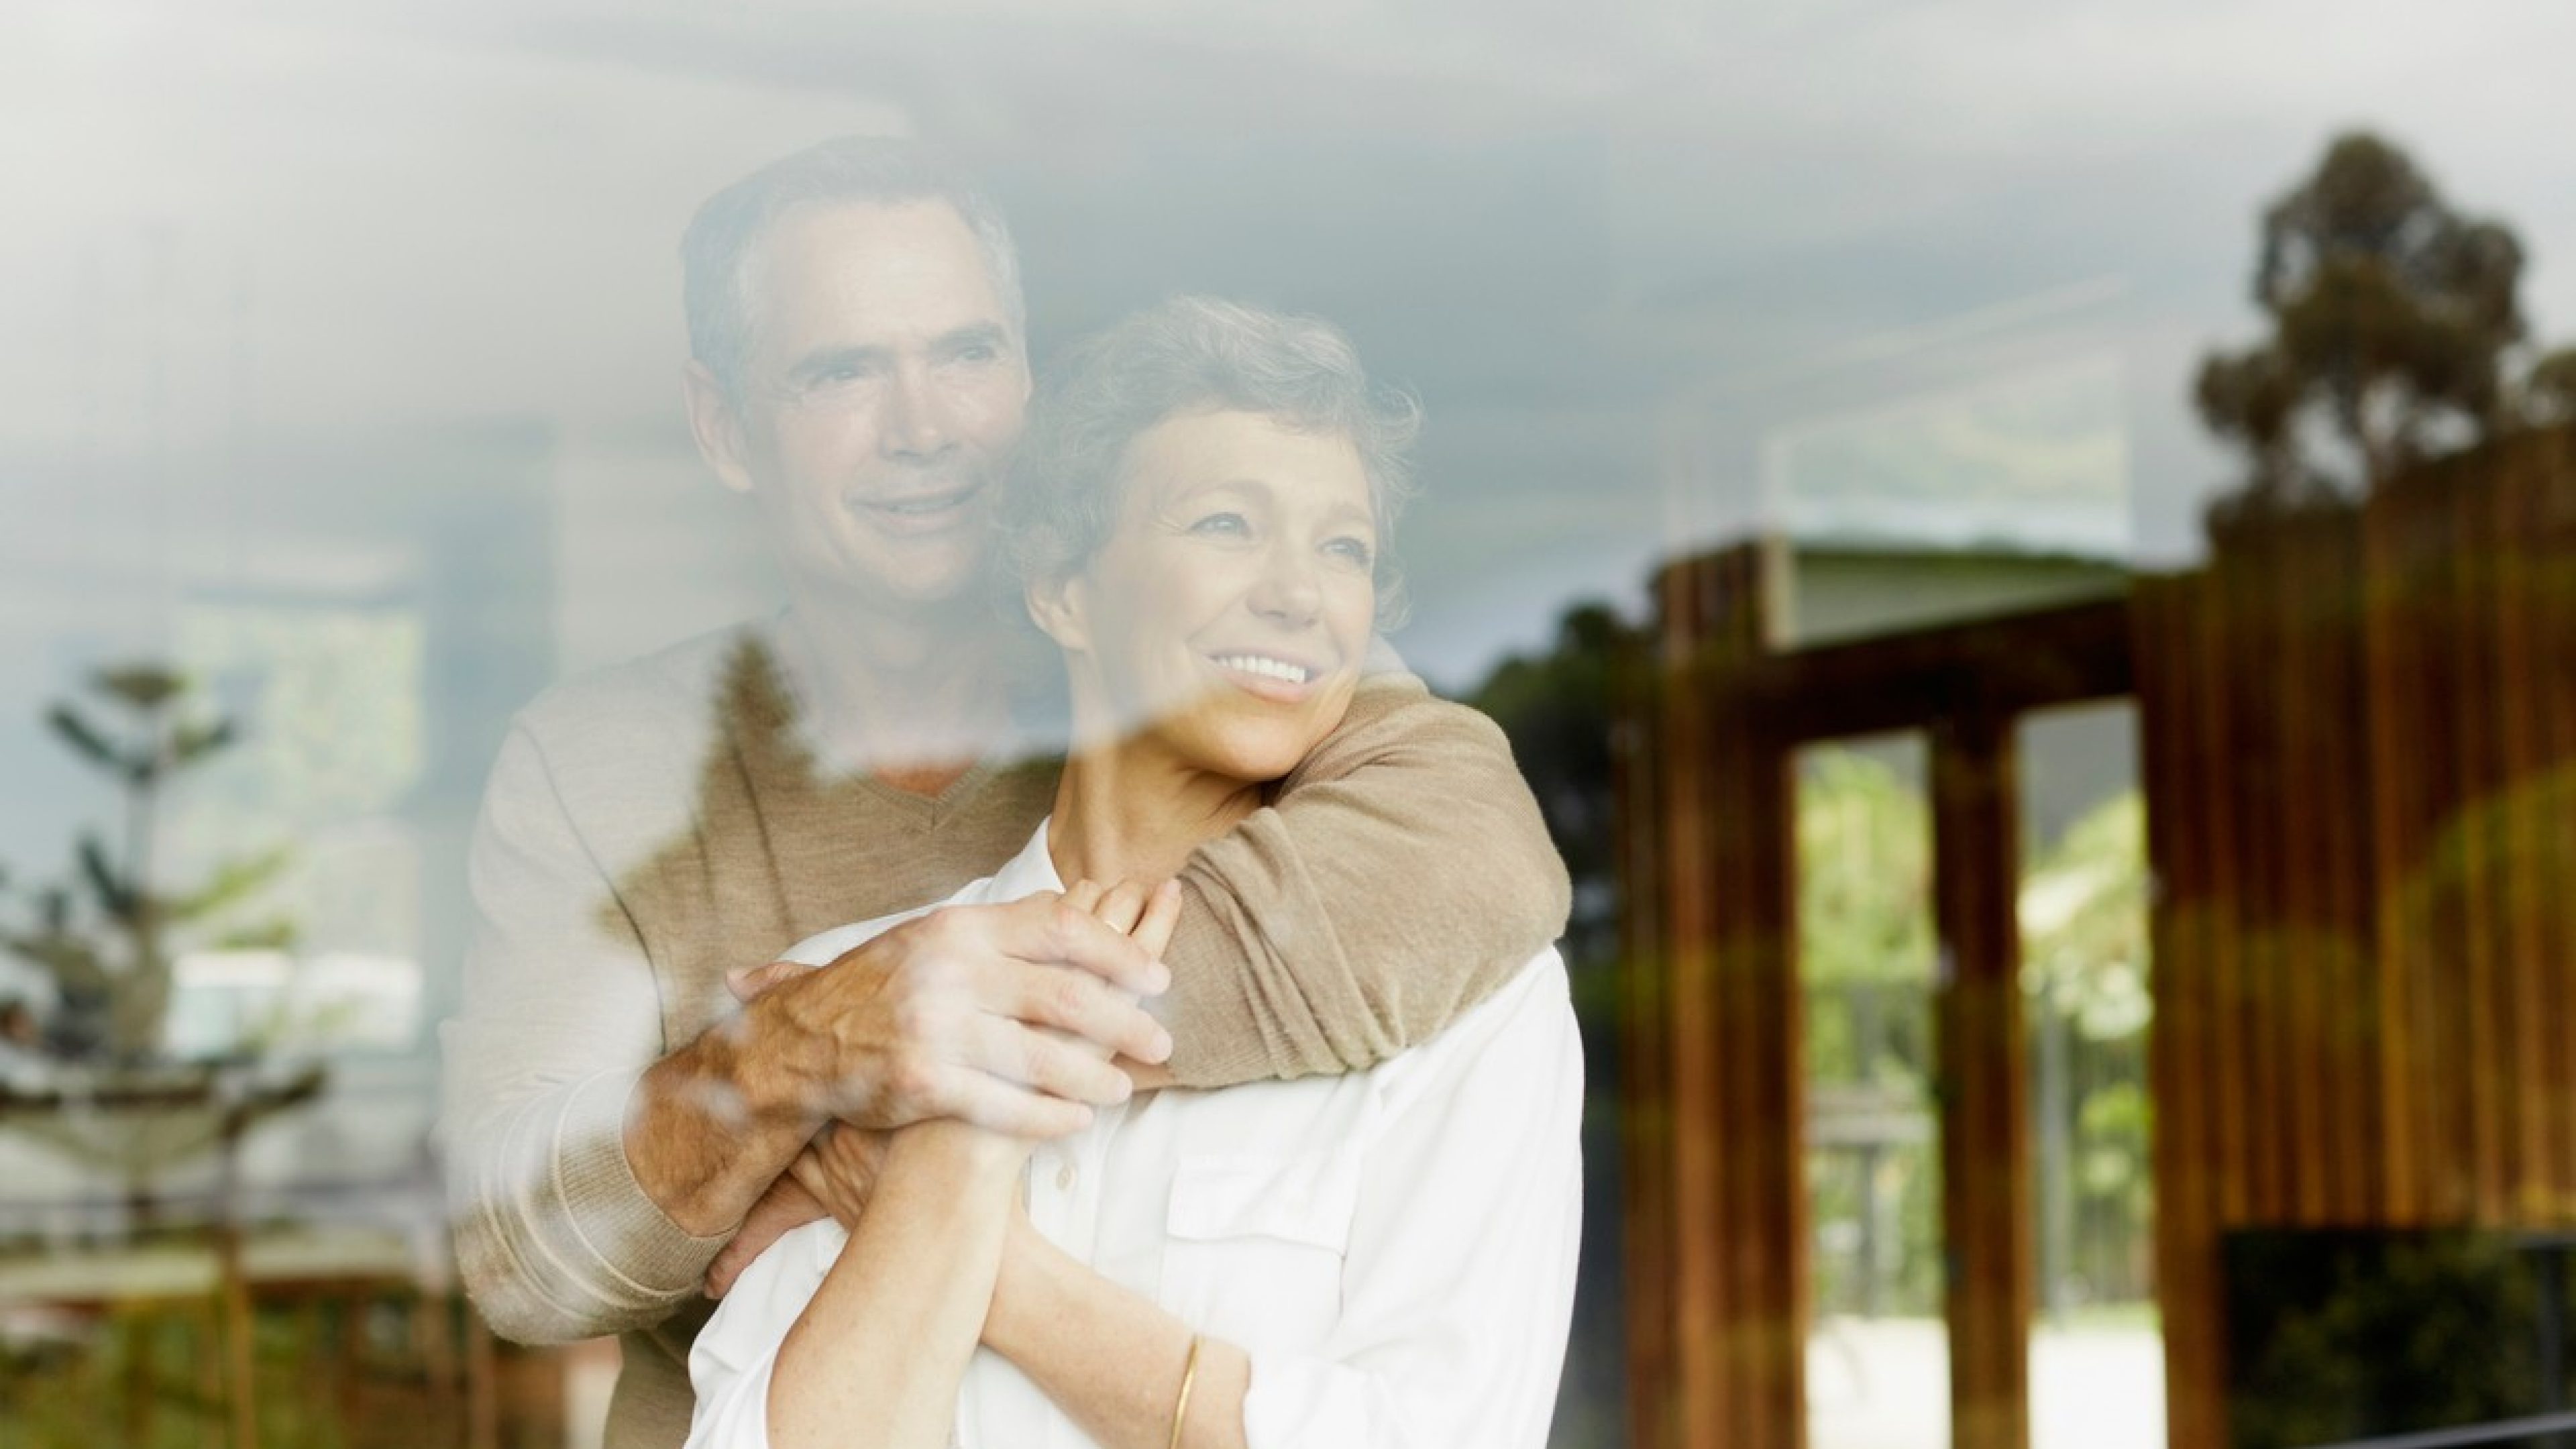 Un couple d’environ 50 ans se tient derrière une vitre, s’enlace et regarde par la fenêtre. Les couleurs sont chaudes. L’homme porte un pull beige, la femme, un chemisier blanc. Tous deux sourient et regardent vers le lointain.